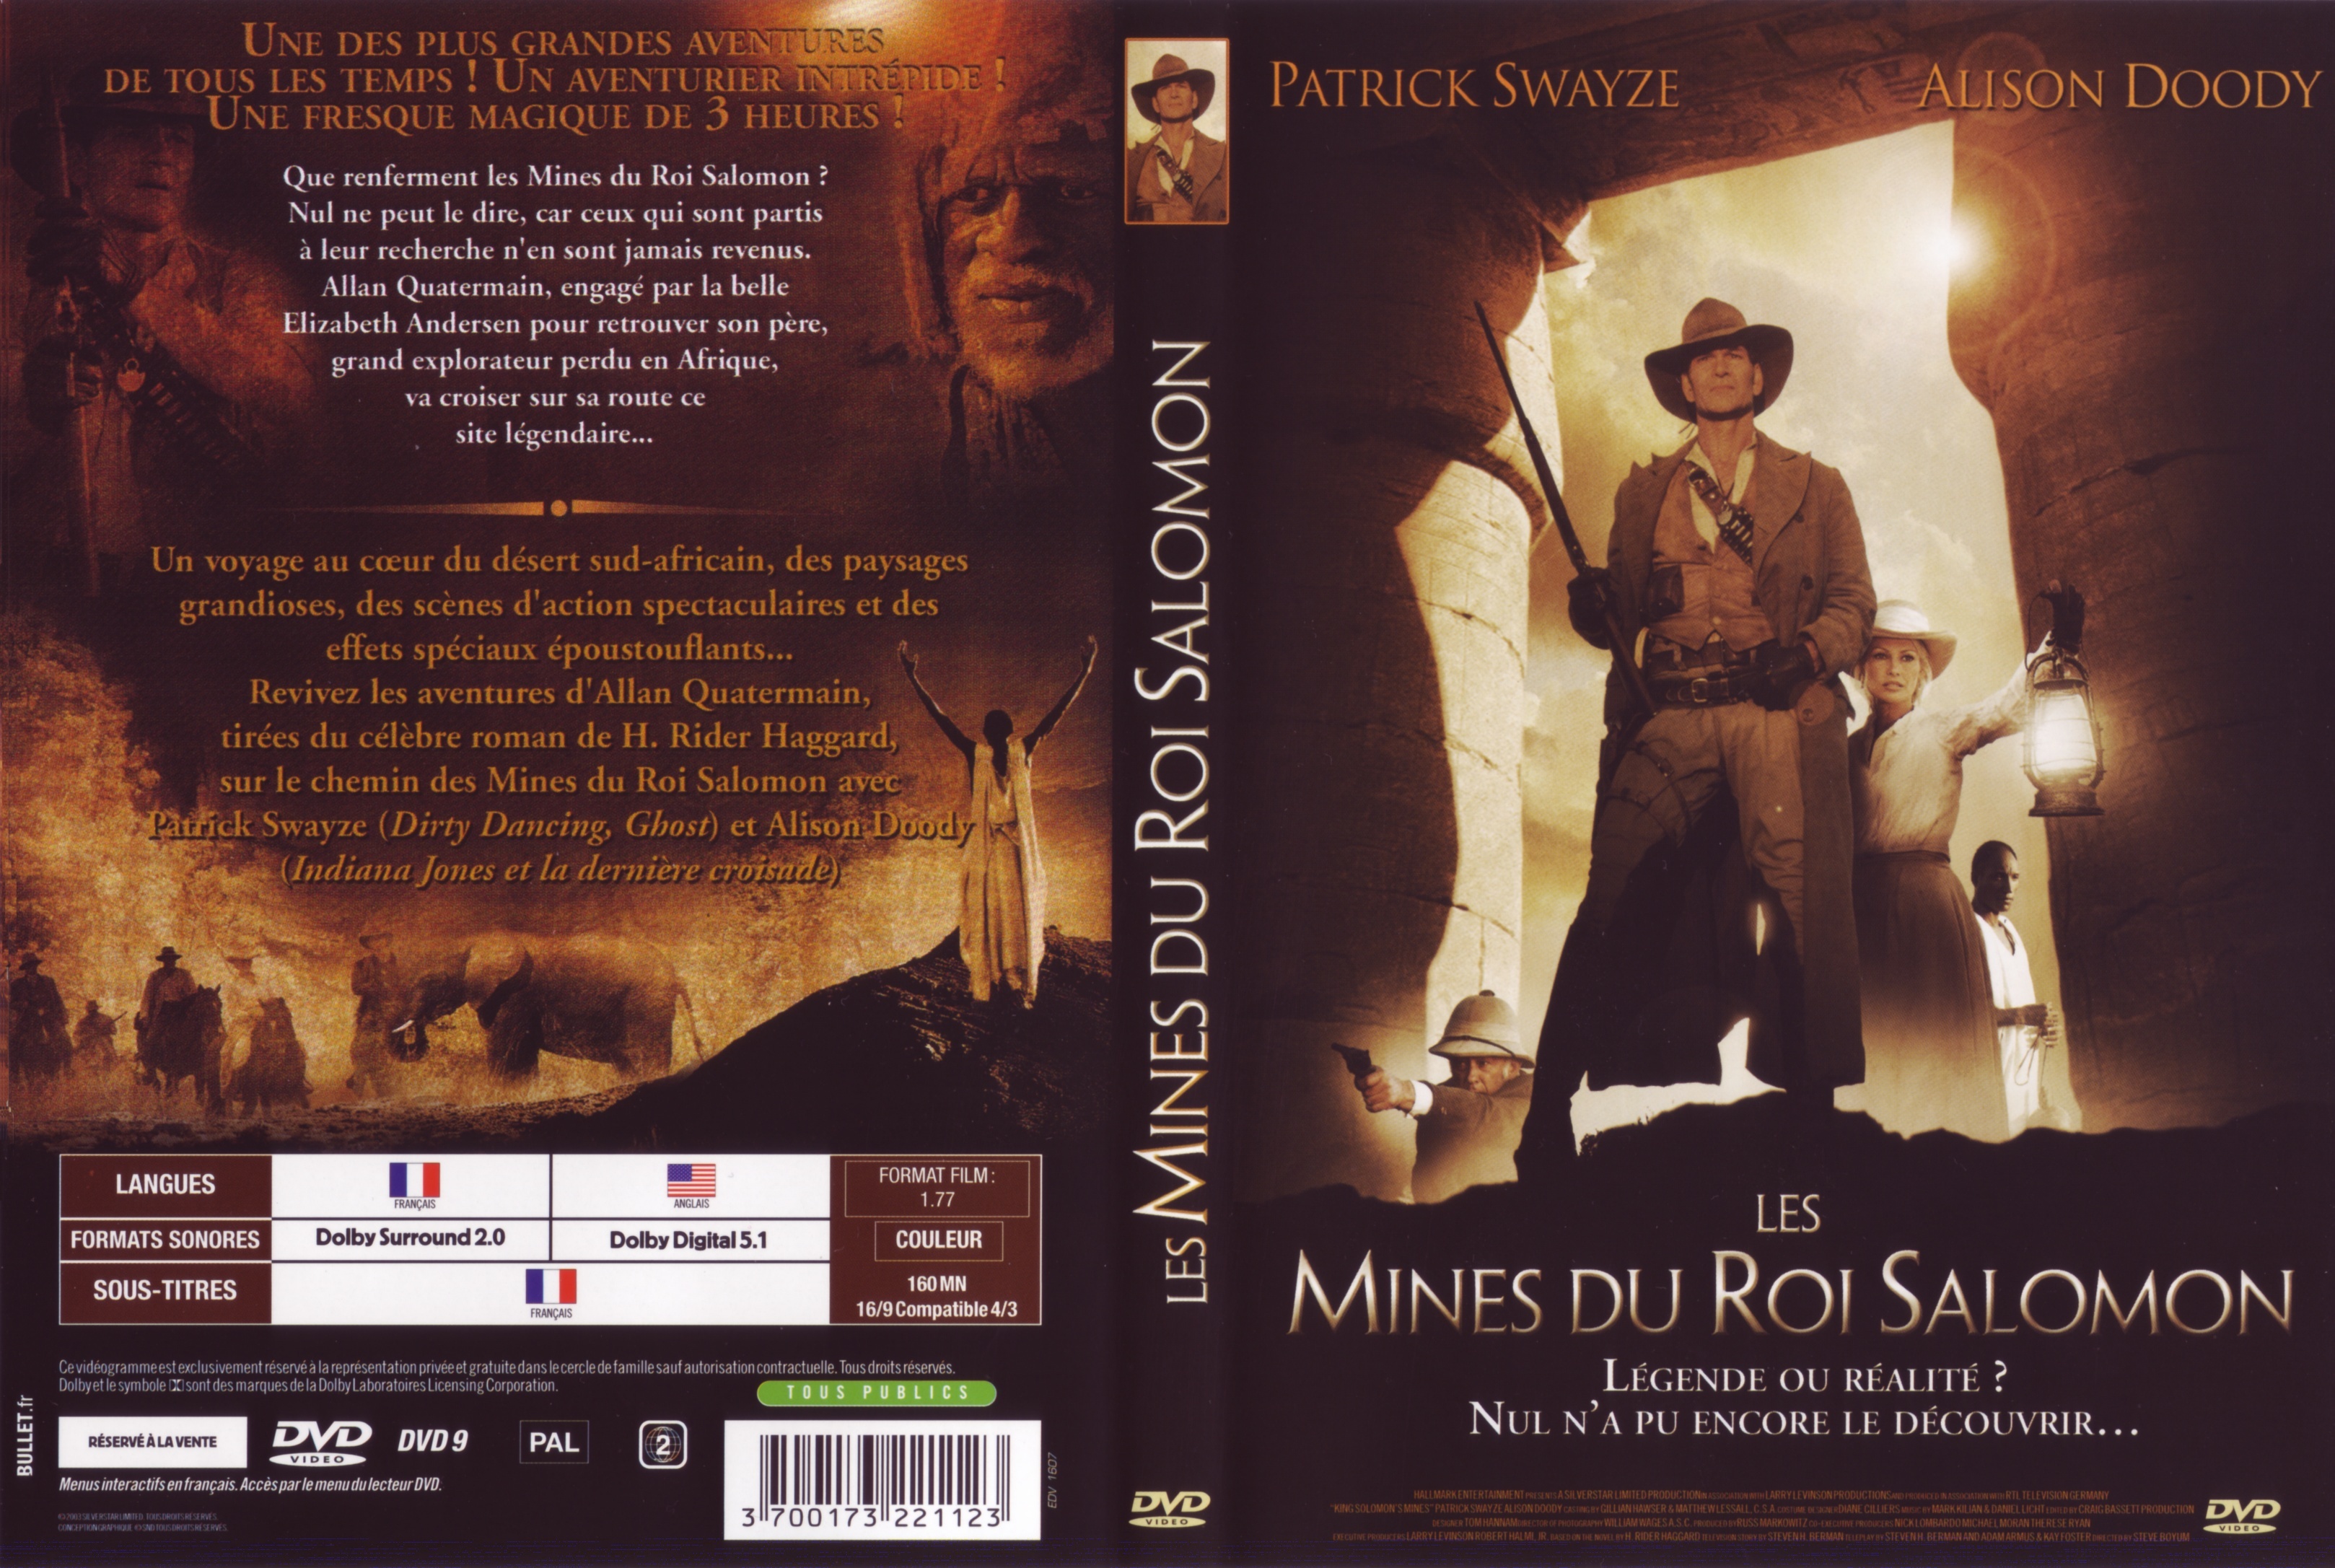 Jaquette DVD Les mines du roi salomon (Patrick Swayze)